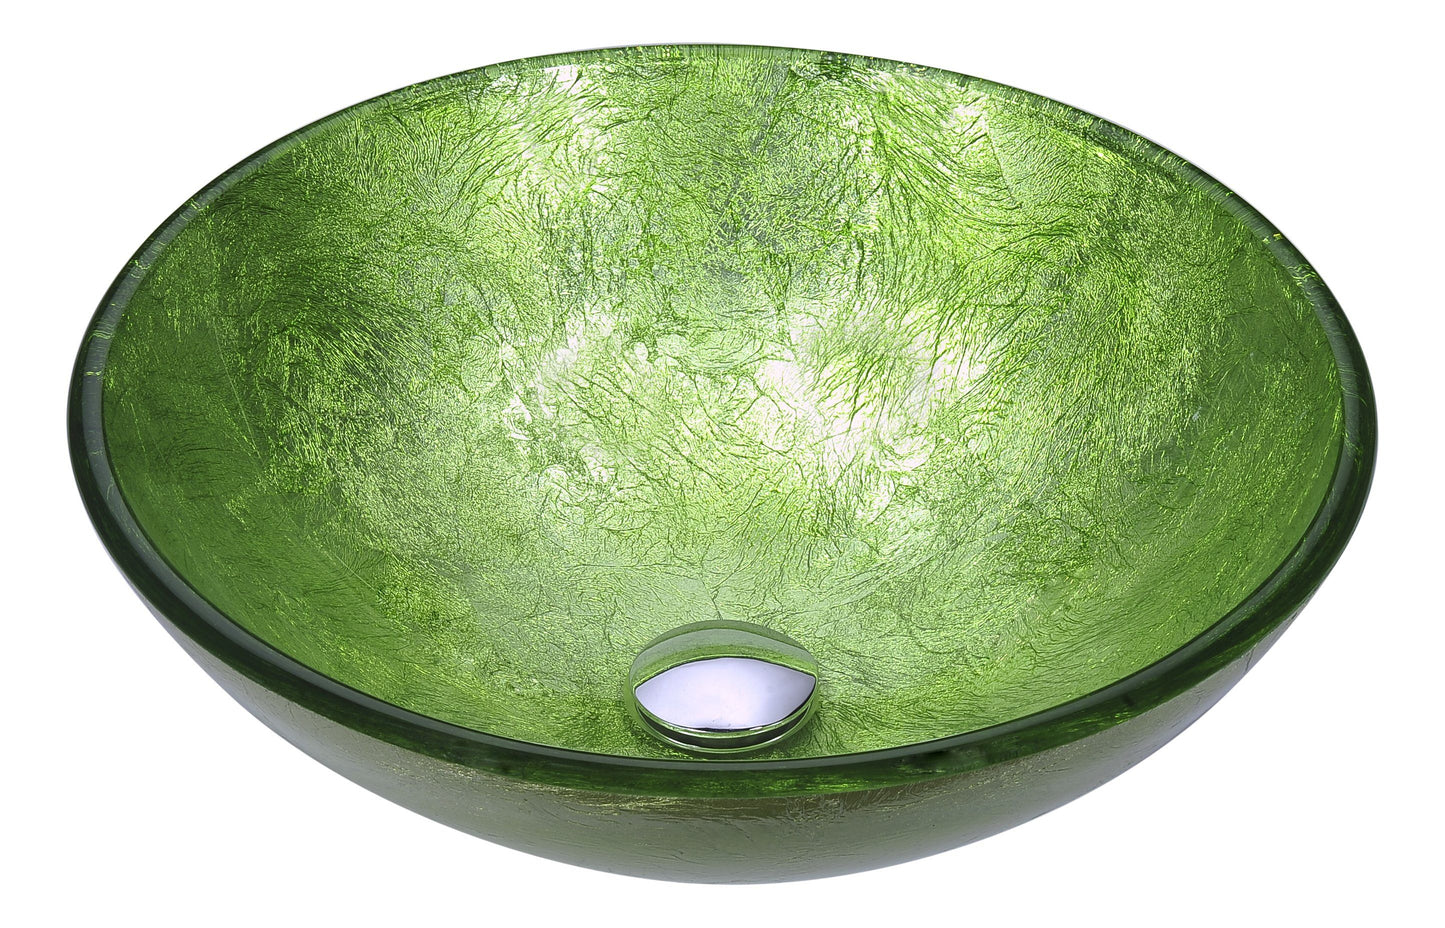 Posh Series Deco-Glass Vessel Sink in Golden Green - Luxe Bathroom Vanities